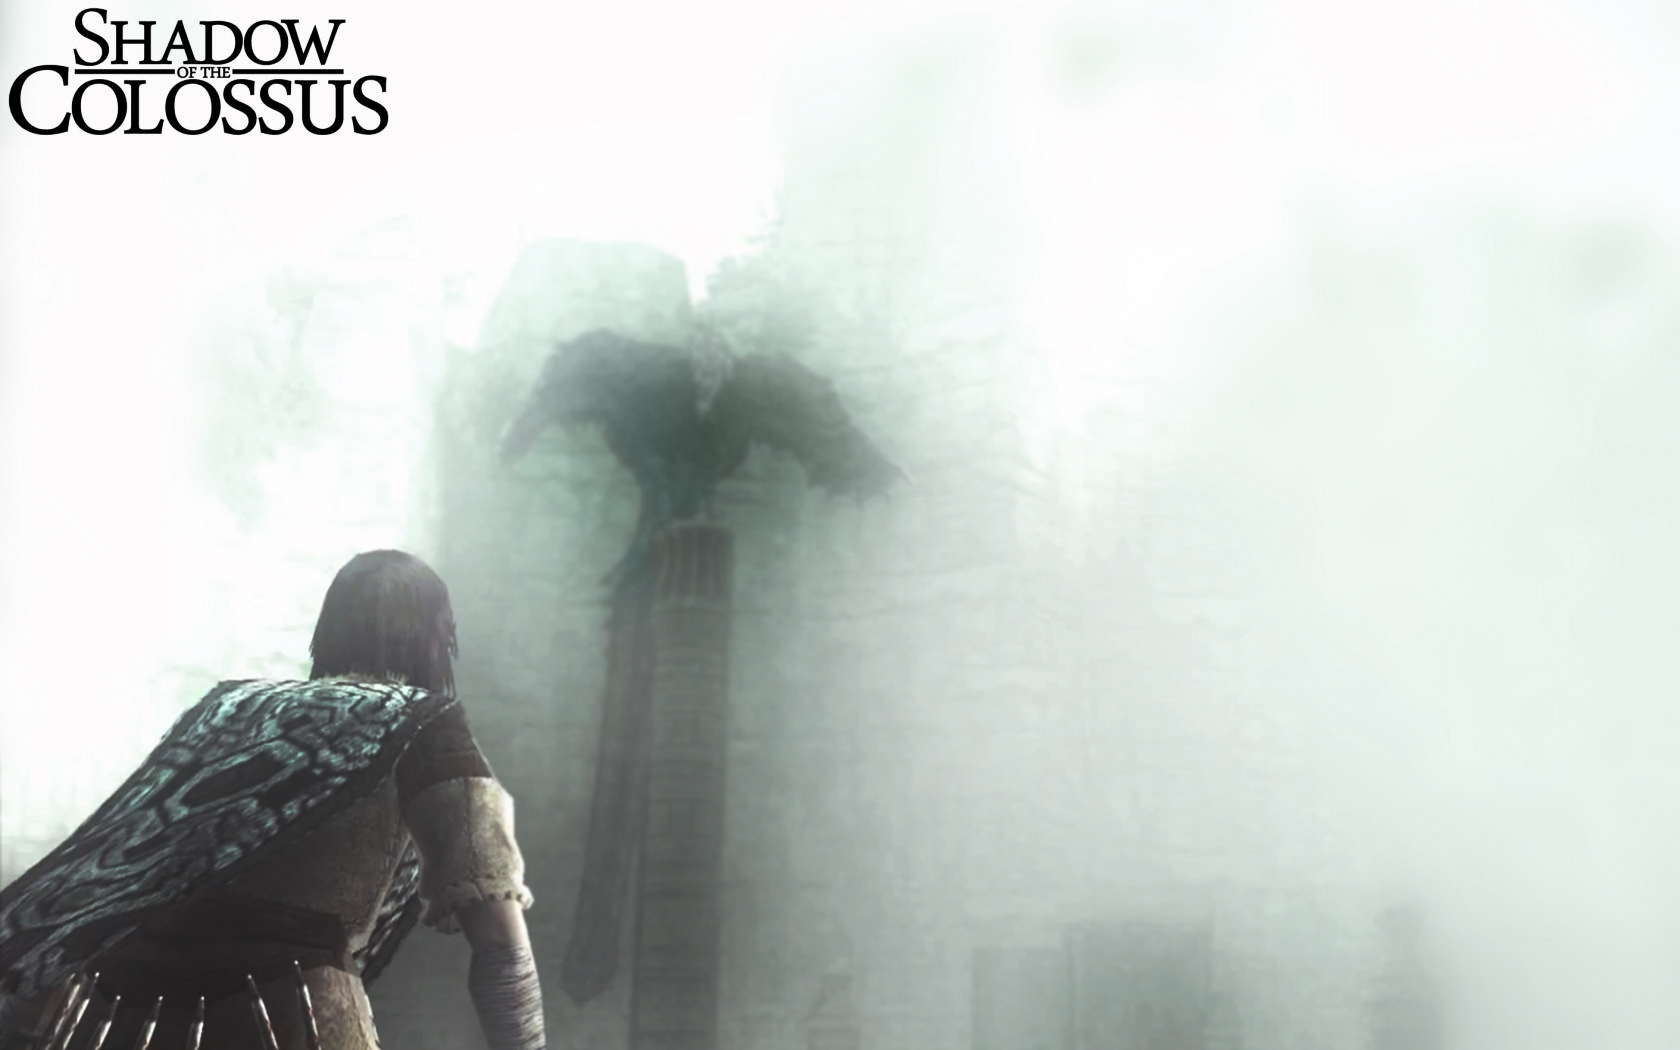 Sobras de Sombras: Shadow of the Colossus - WALLPAPERS FURIOSOS para  download!!!